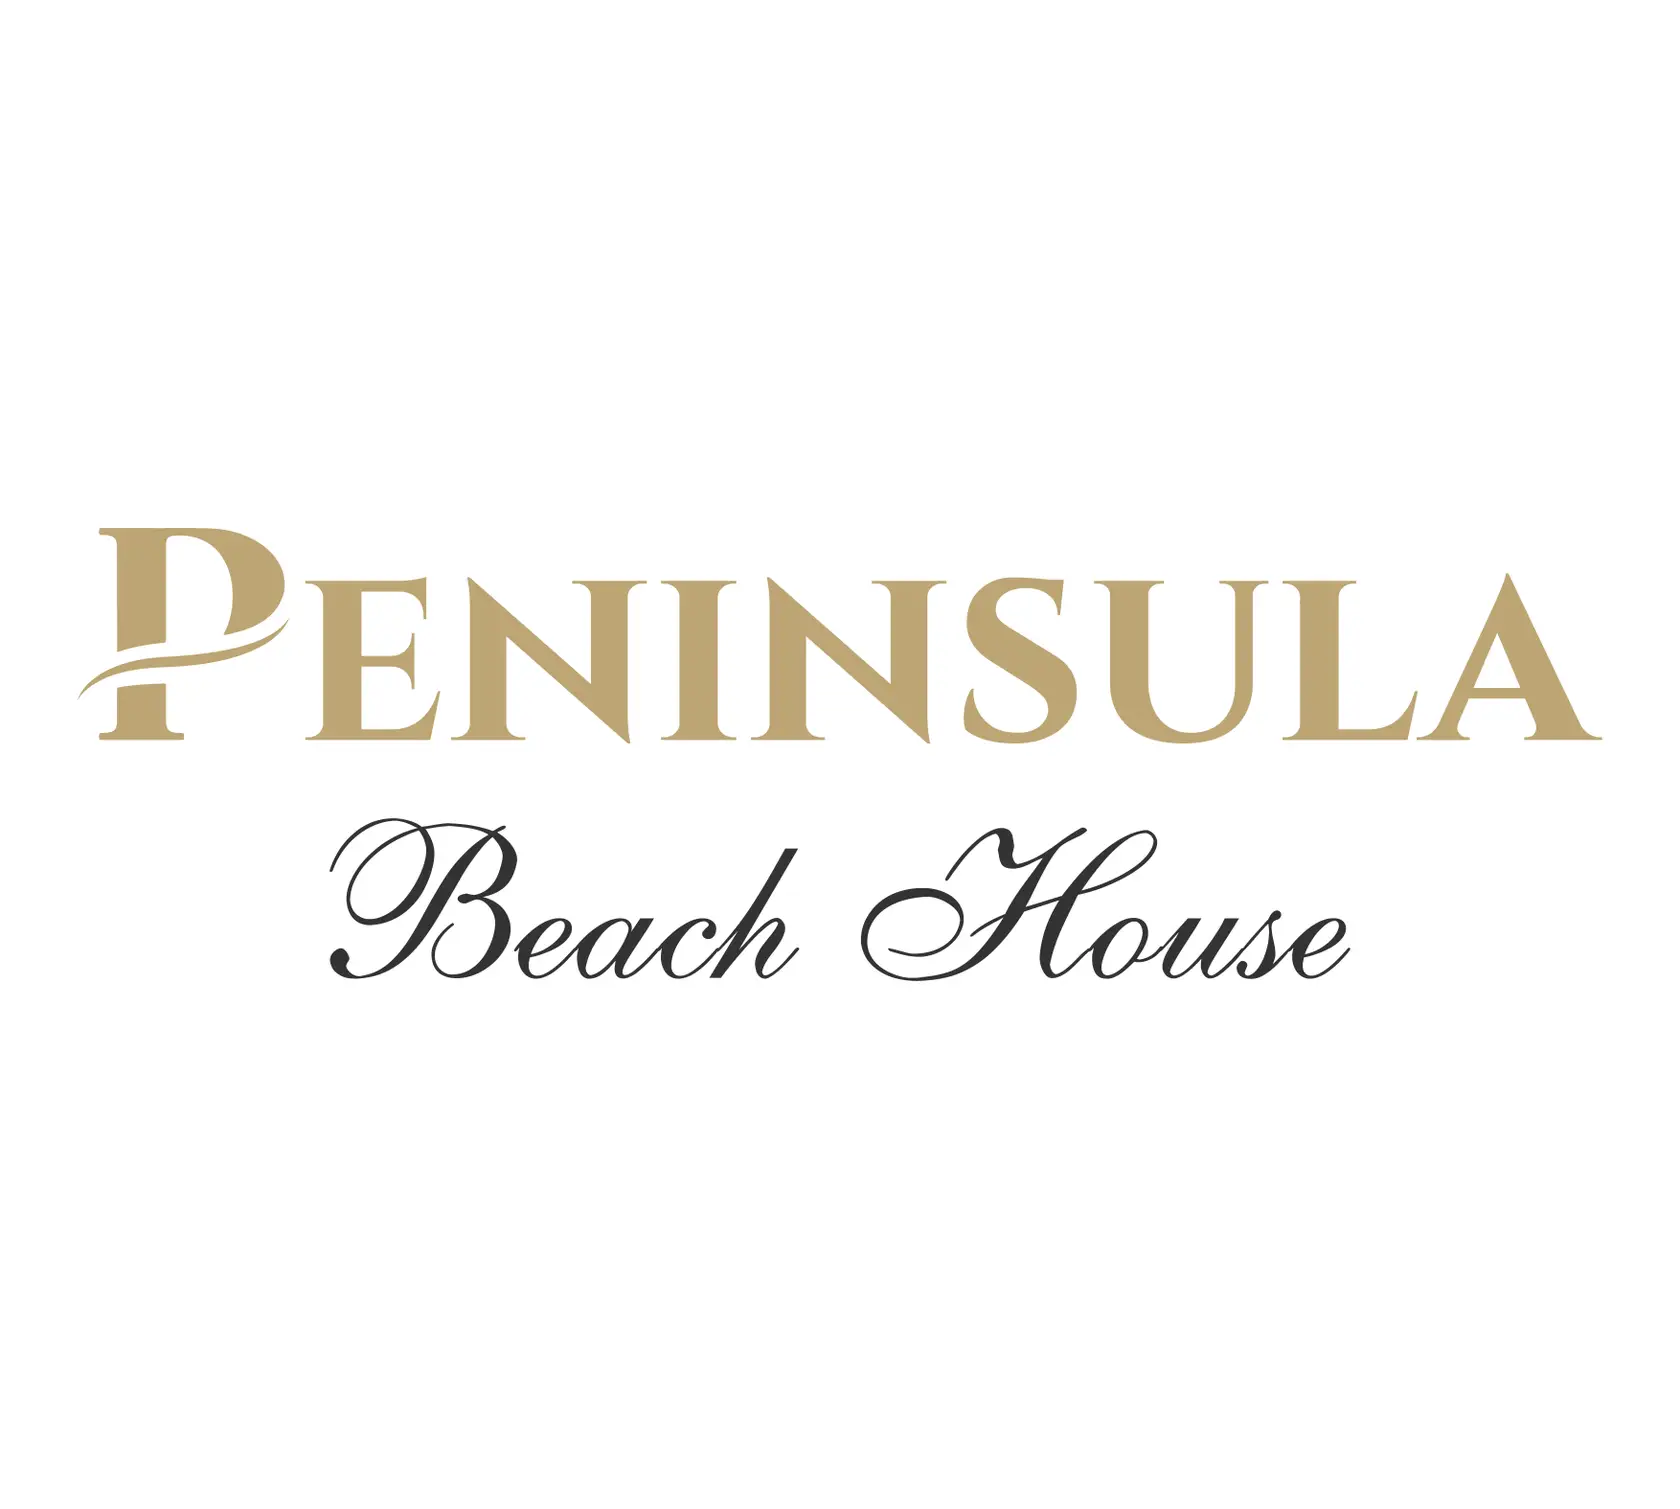 peninsula-beach-house-final-hq.jpg